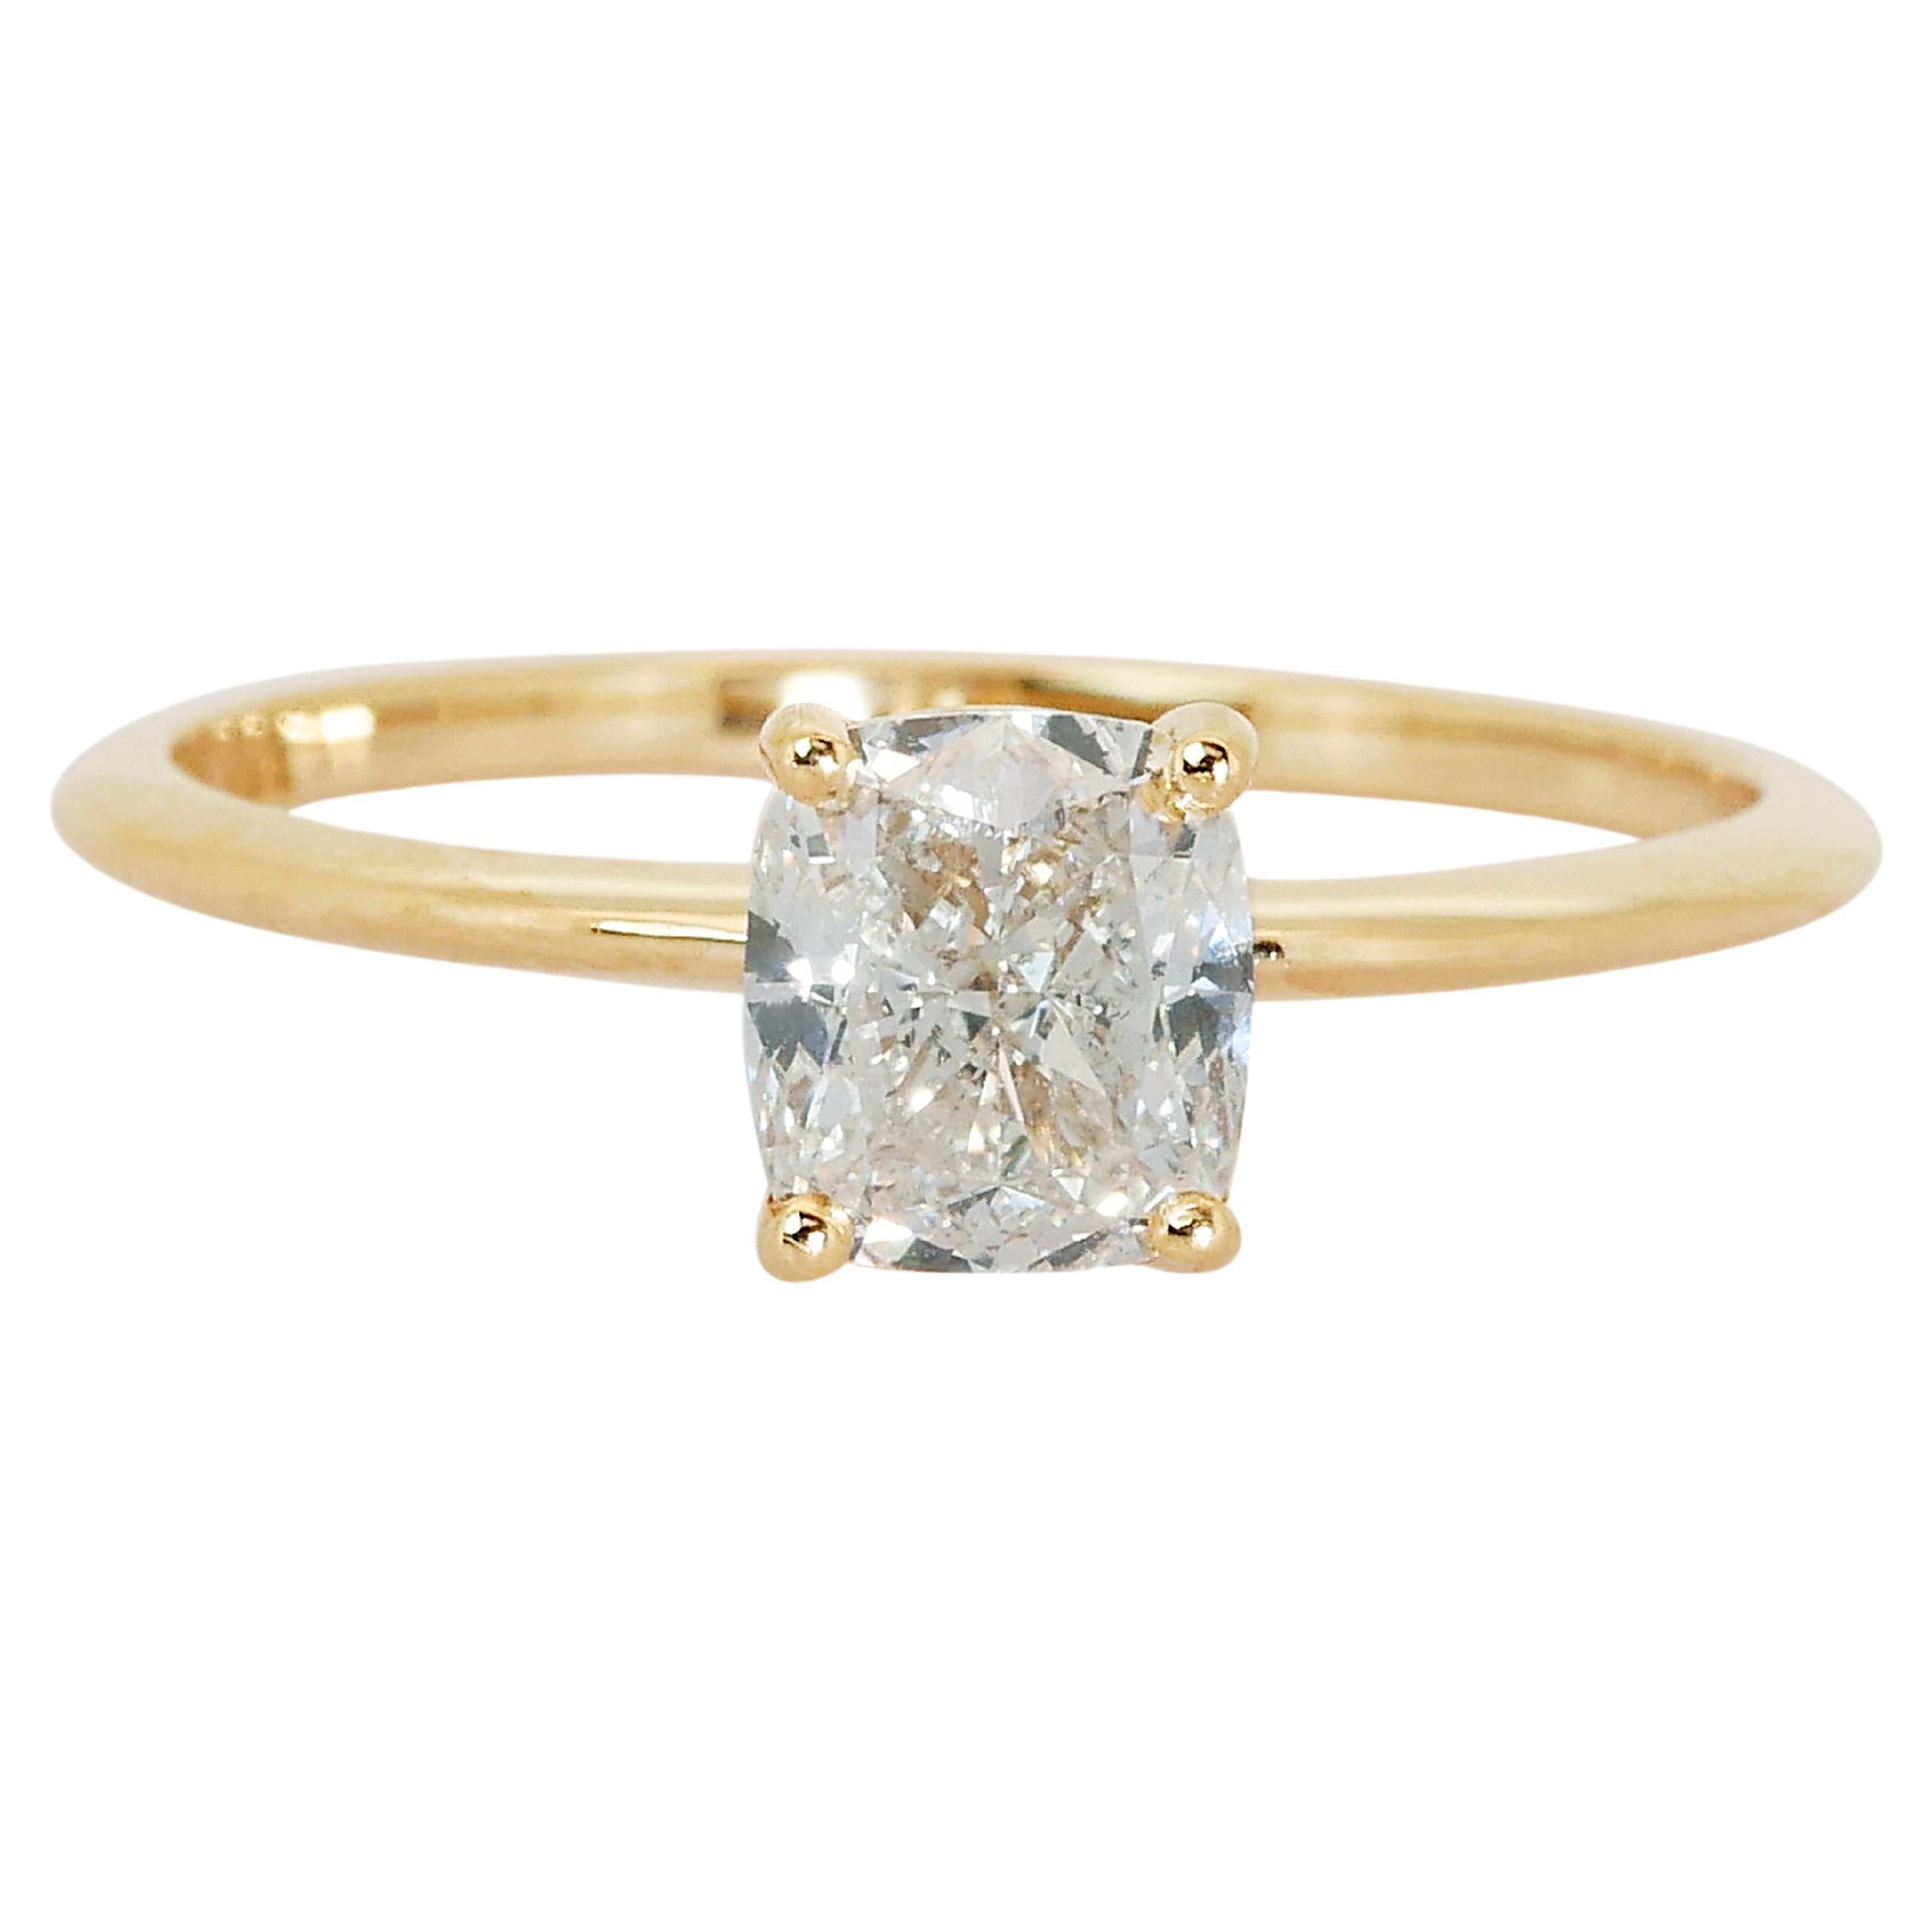 Bague solitaire glamour en or jaune 18 carats avec 1,02 carat de diamants naturels certifiés IGI